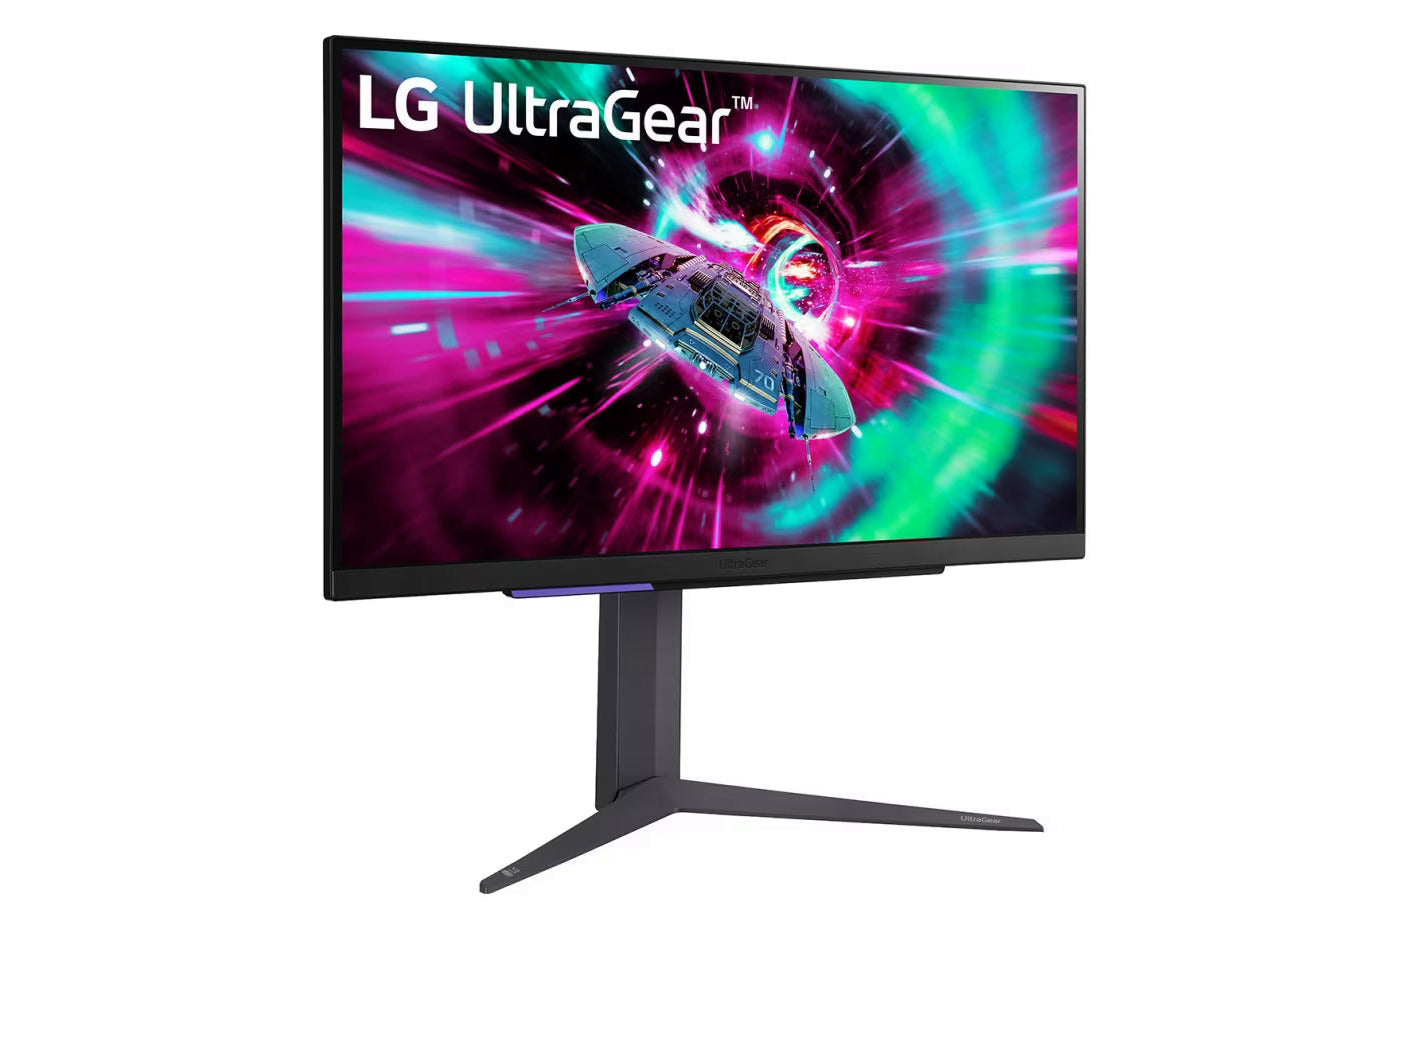 LG 27GR93U-B 4K Gaming monitor előlnézetben talpon, enyhén jobbra fordítva. A kijelzőn ultragear logó és zöldes lila színekben száguldó űrhajó.